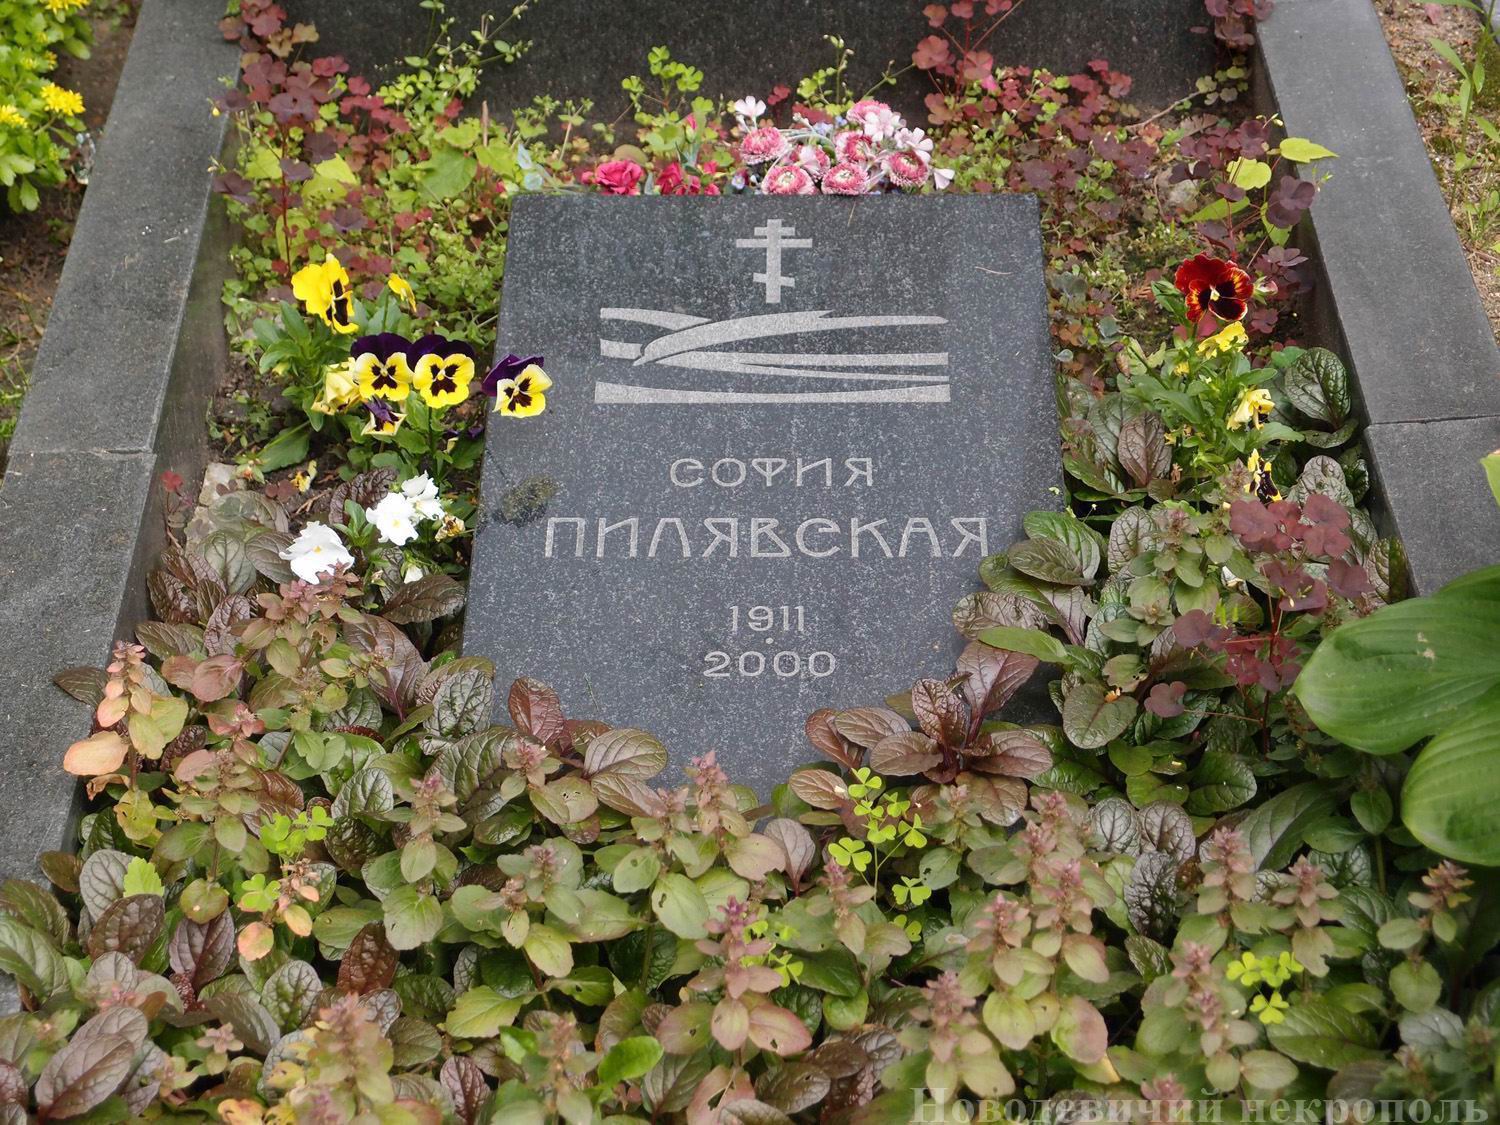 Памятник на могиле Пилявской С.С. (1911-2000), на Новодевичьем кладбище (2-15-18). Нажмите левую кнопку мыши, чтобы увидеть другой ракурс.